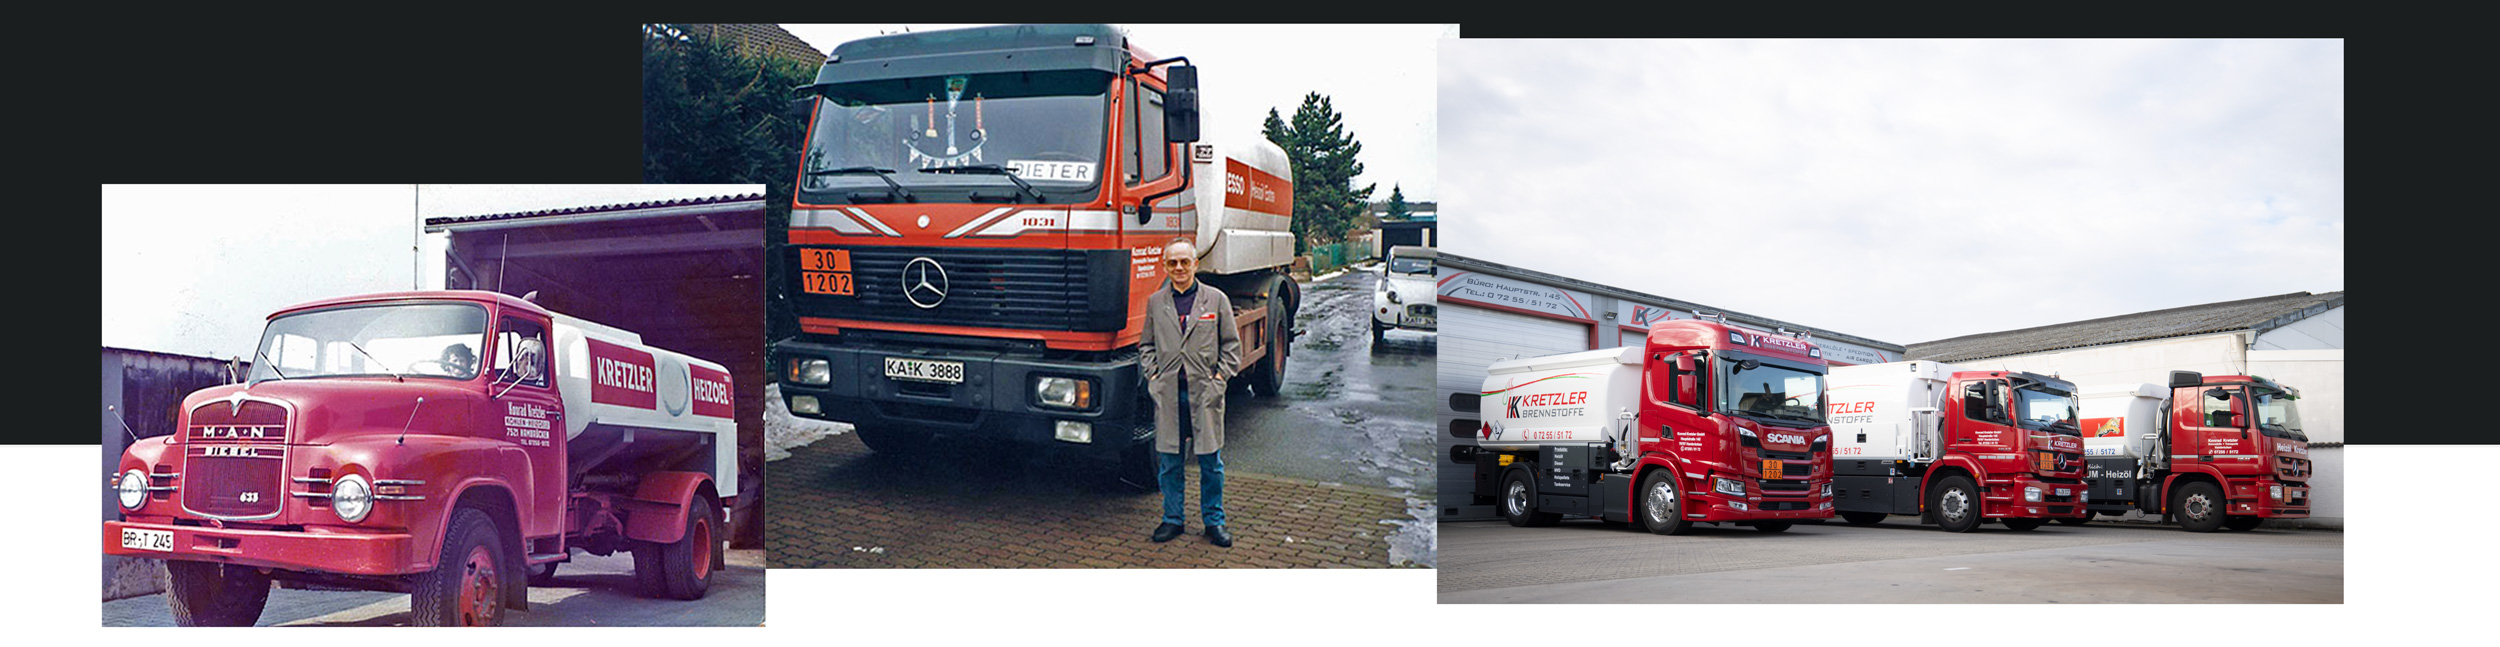 Wir liefern seit über 50 Jahren Heizöl und Diesel in Bruchsal und Umgebung.